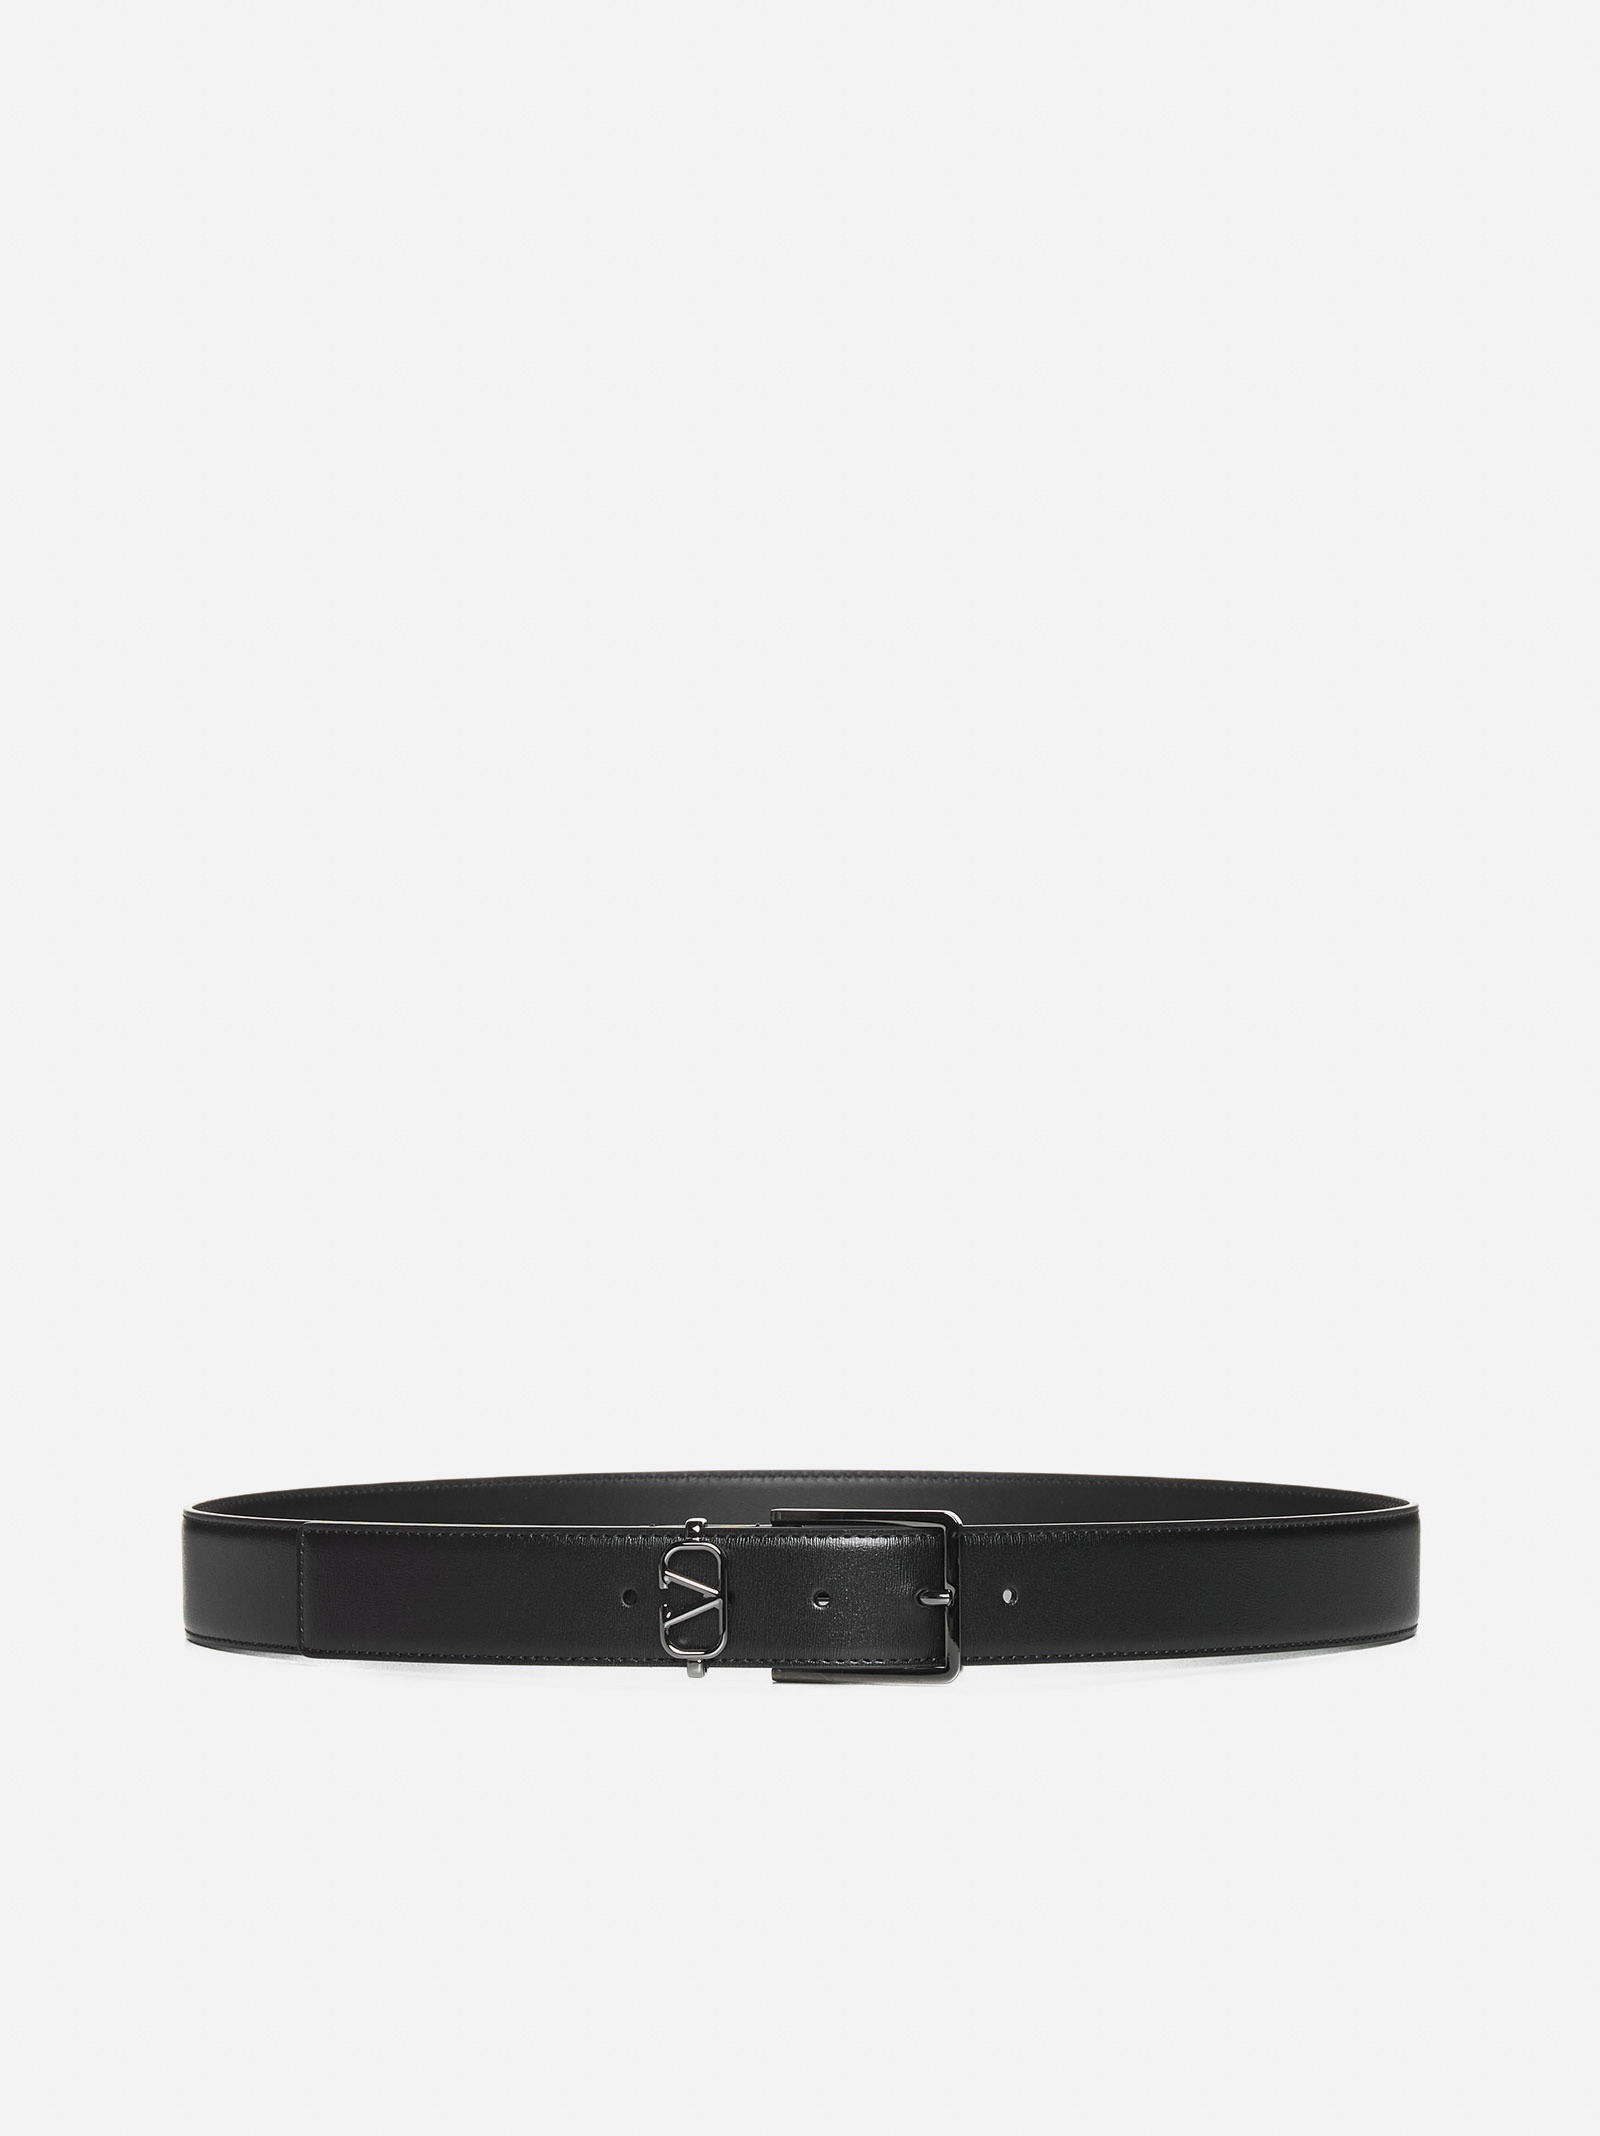 VLogo Signature leather belt - 1